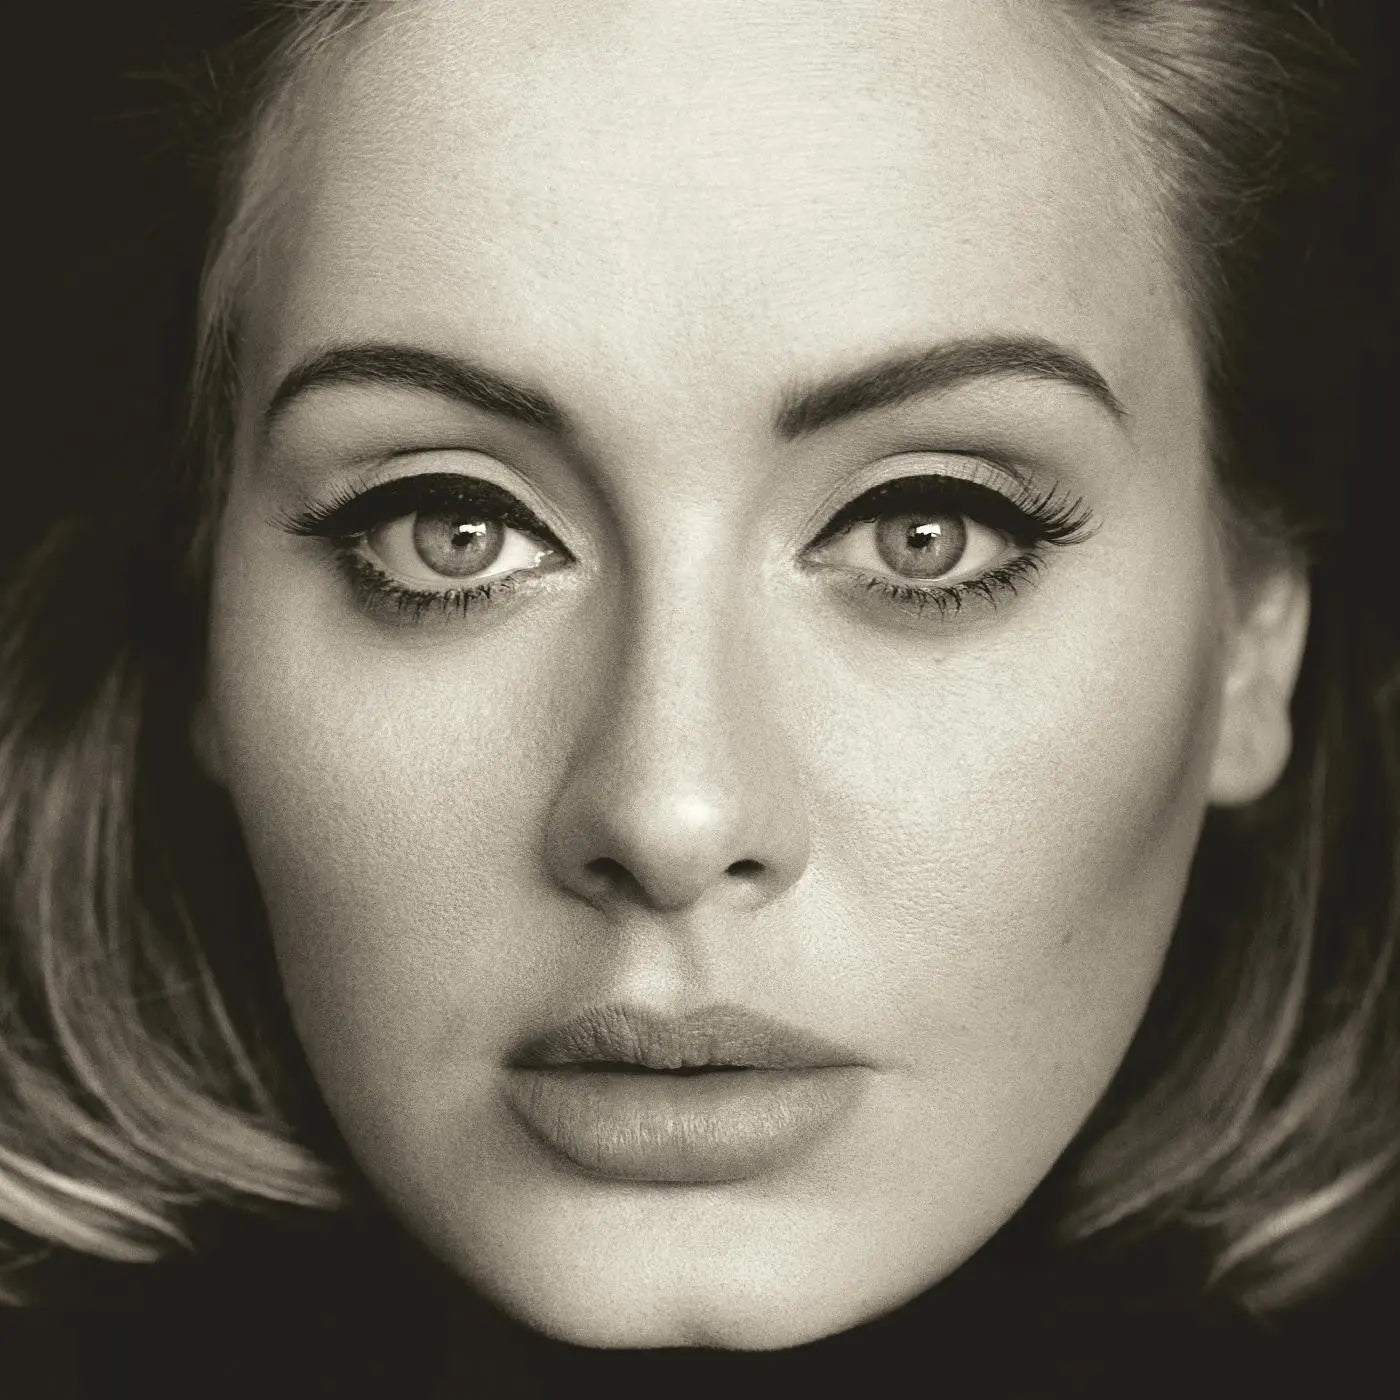 Adele - 25 [Vinyl LP]